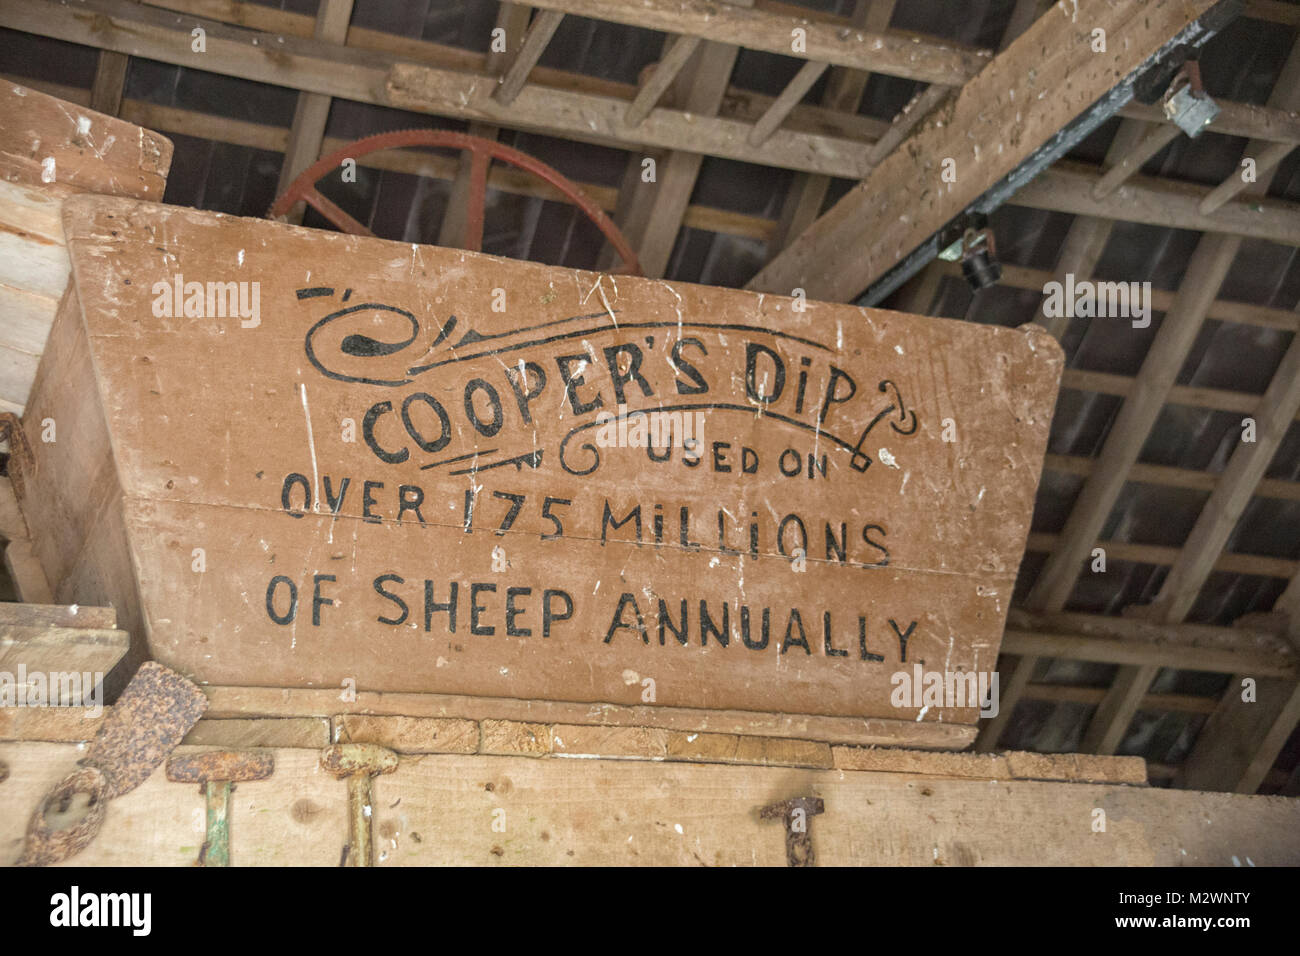 Cooper's dip ist eine der besten alten Schafe Dips in England im Jahre 1852. Stockfoto